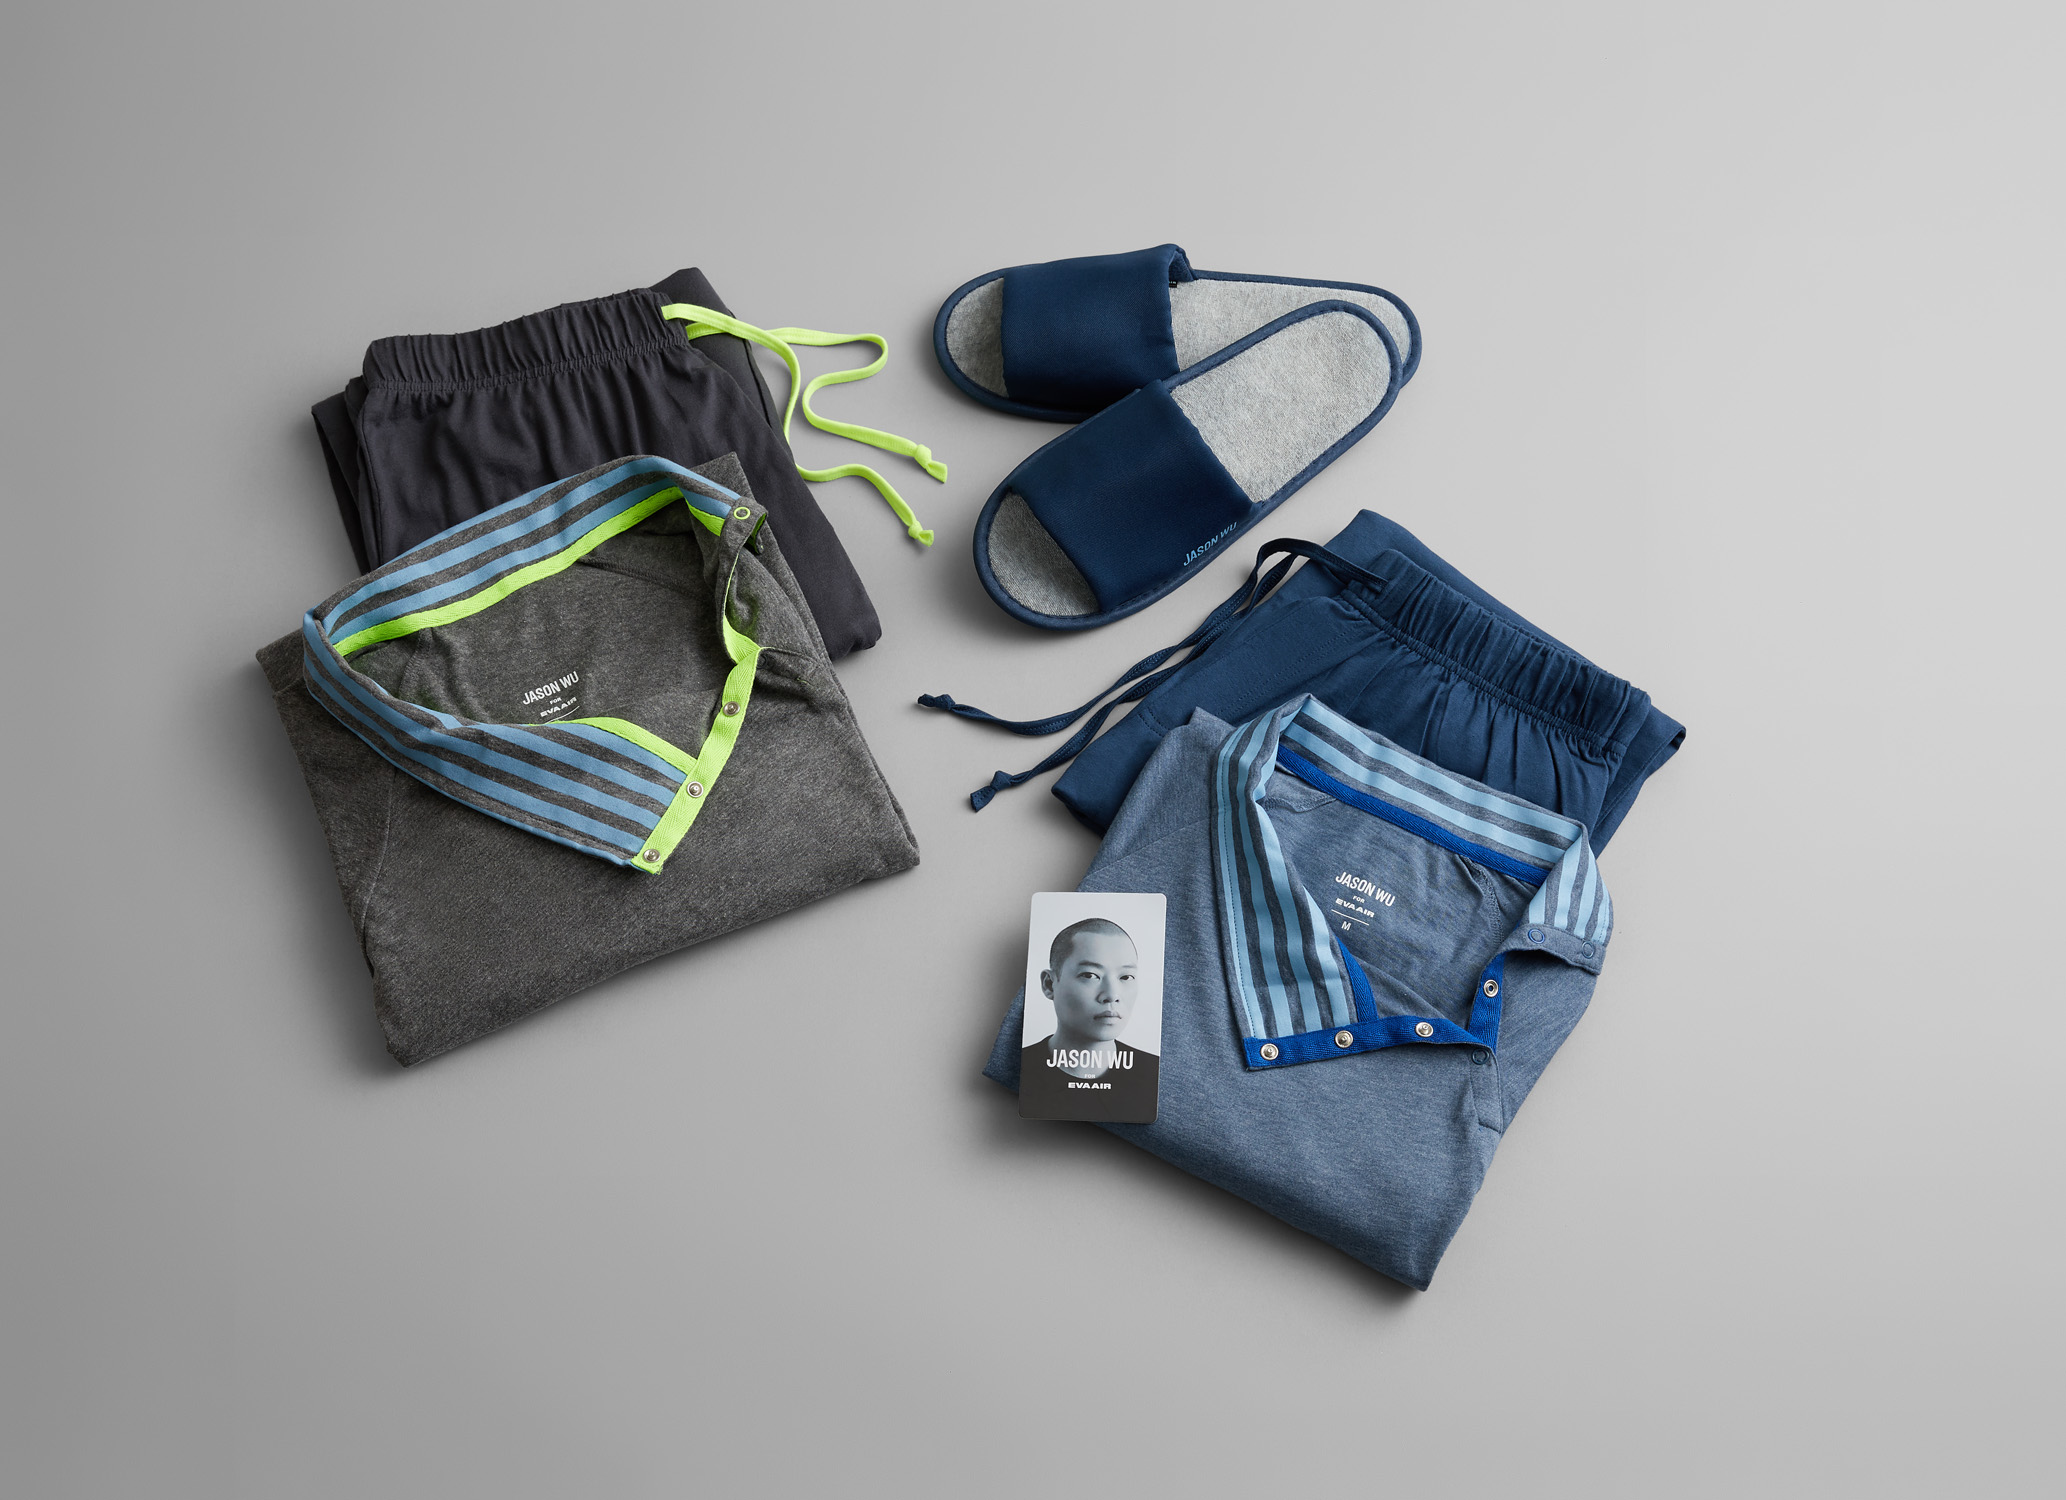 EVA Air launches premium sleepwear by Jason Wu